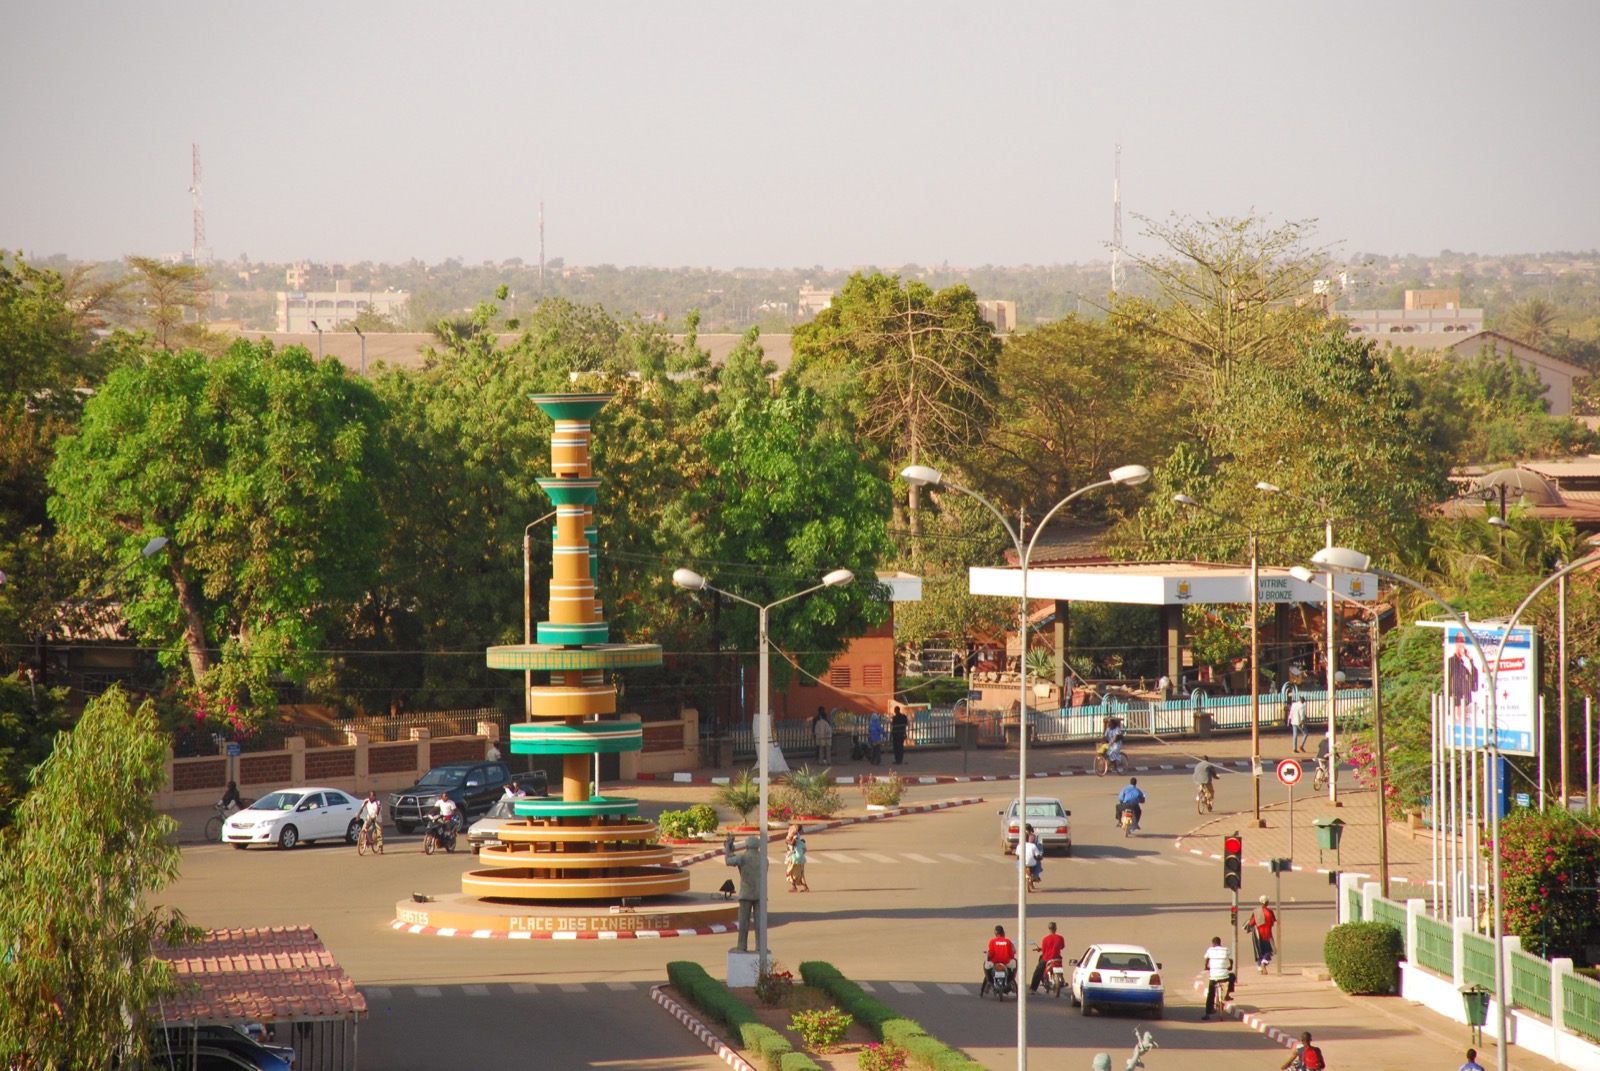 Ouagadougou, Burkina Faso